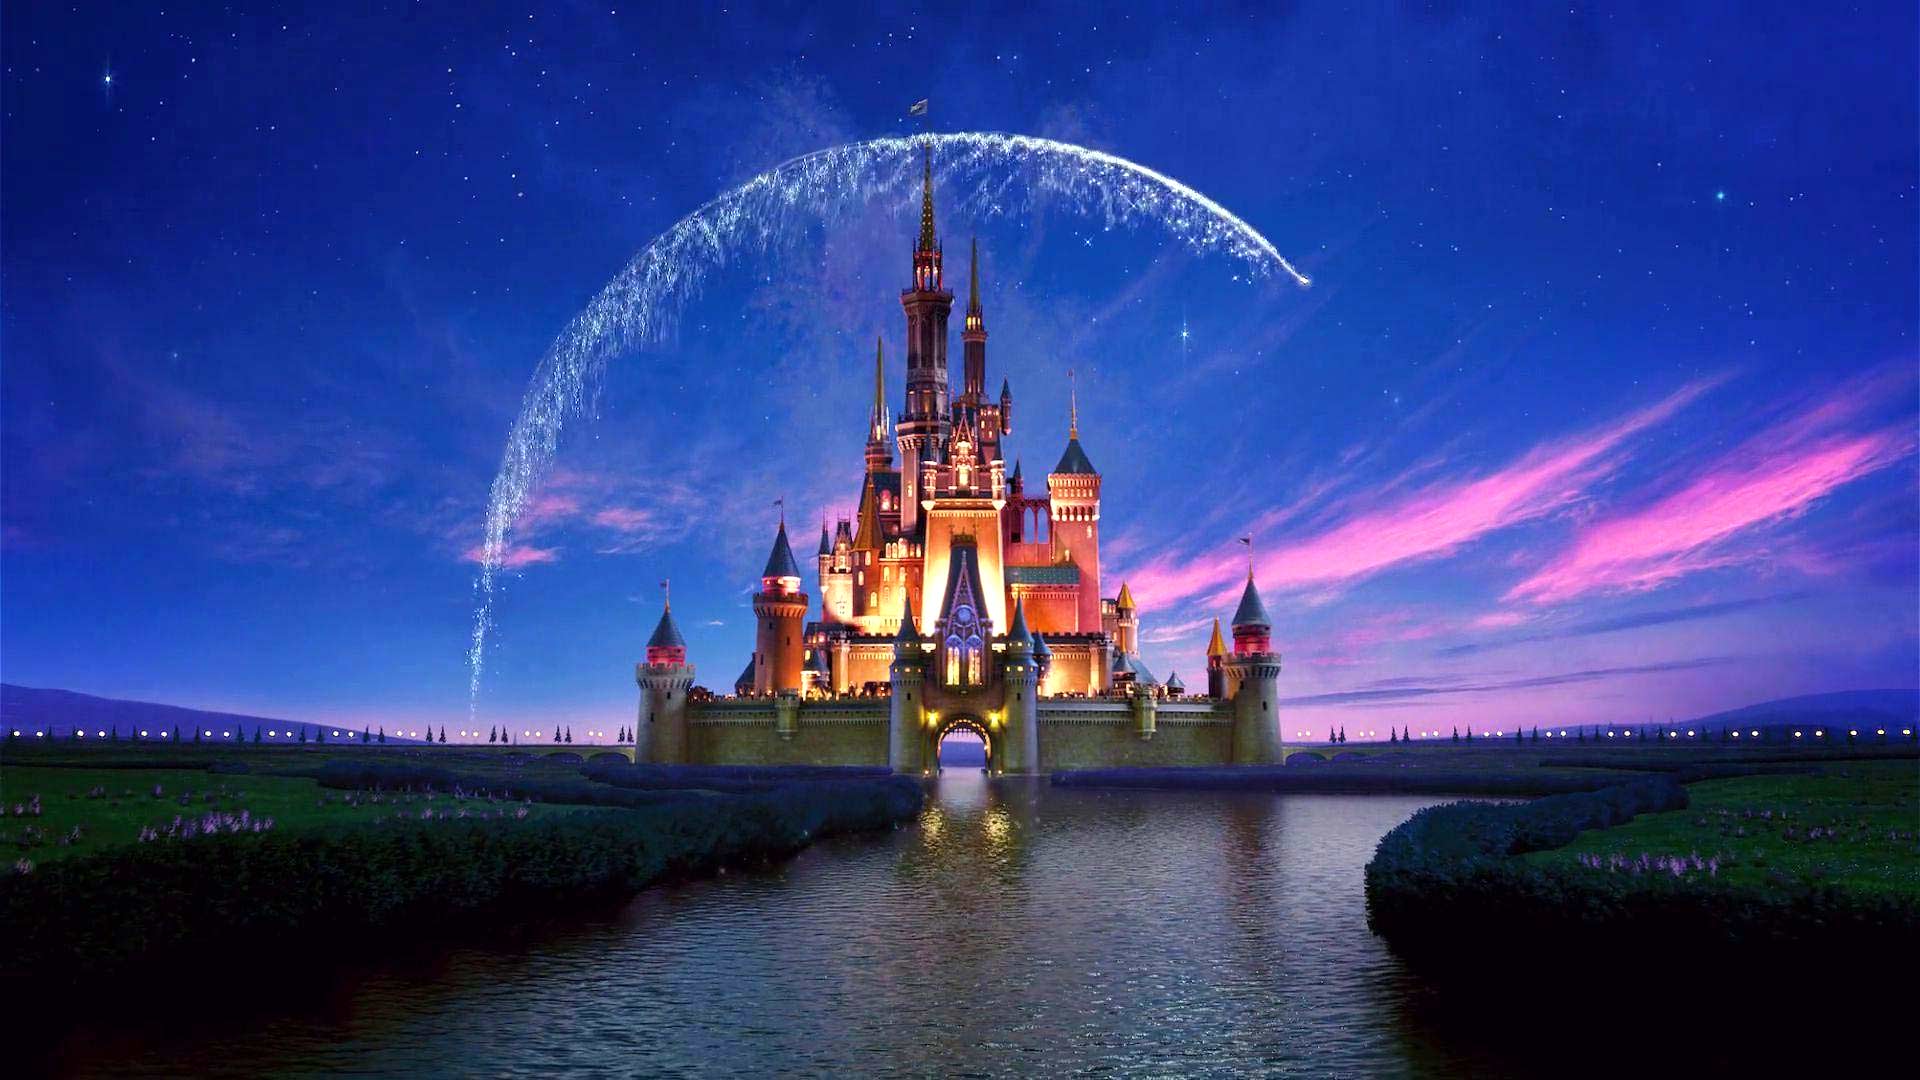 Bạn đang tìm kiếm các hình nền Zoom của Disney miễn phí? Những phông nền với hình ảnh các nhân vật Disney yêu thích sẽ làm bạn vui sướng khi sử dụng Zoom. Tải về ngay hôm nay và trang trí cho không gian làm việc của bạn trở nên đầy màu sắc.